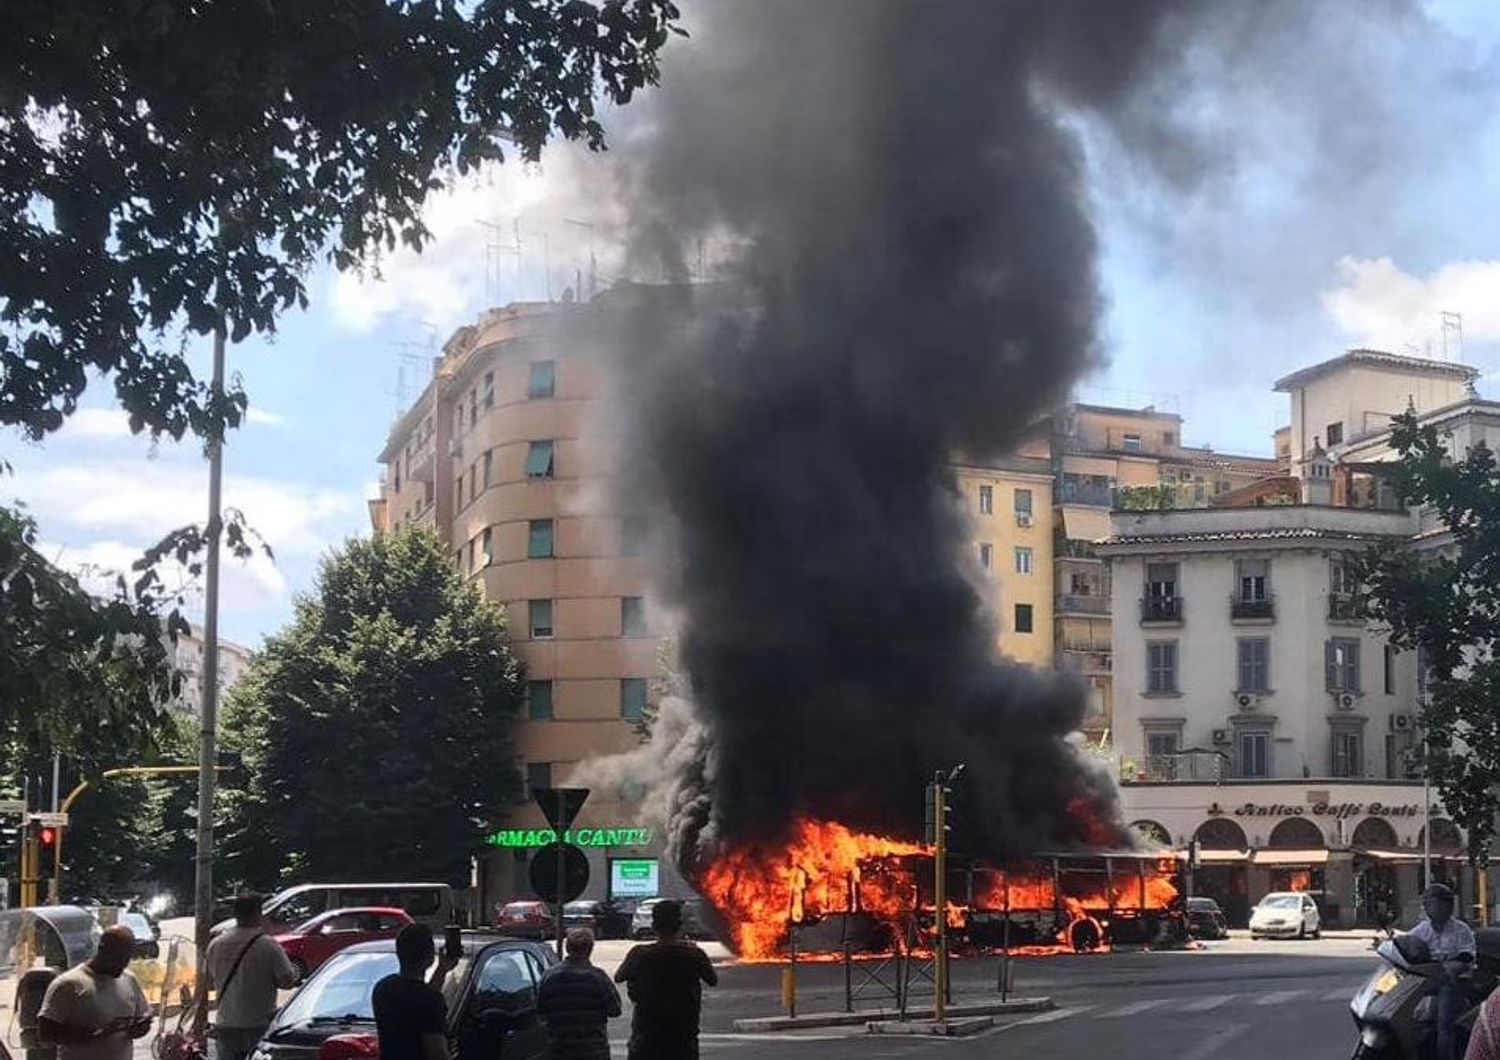 L'autobus in fiamme nel quartiere Appio